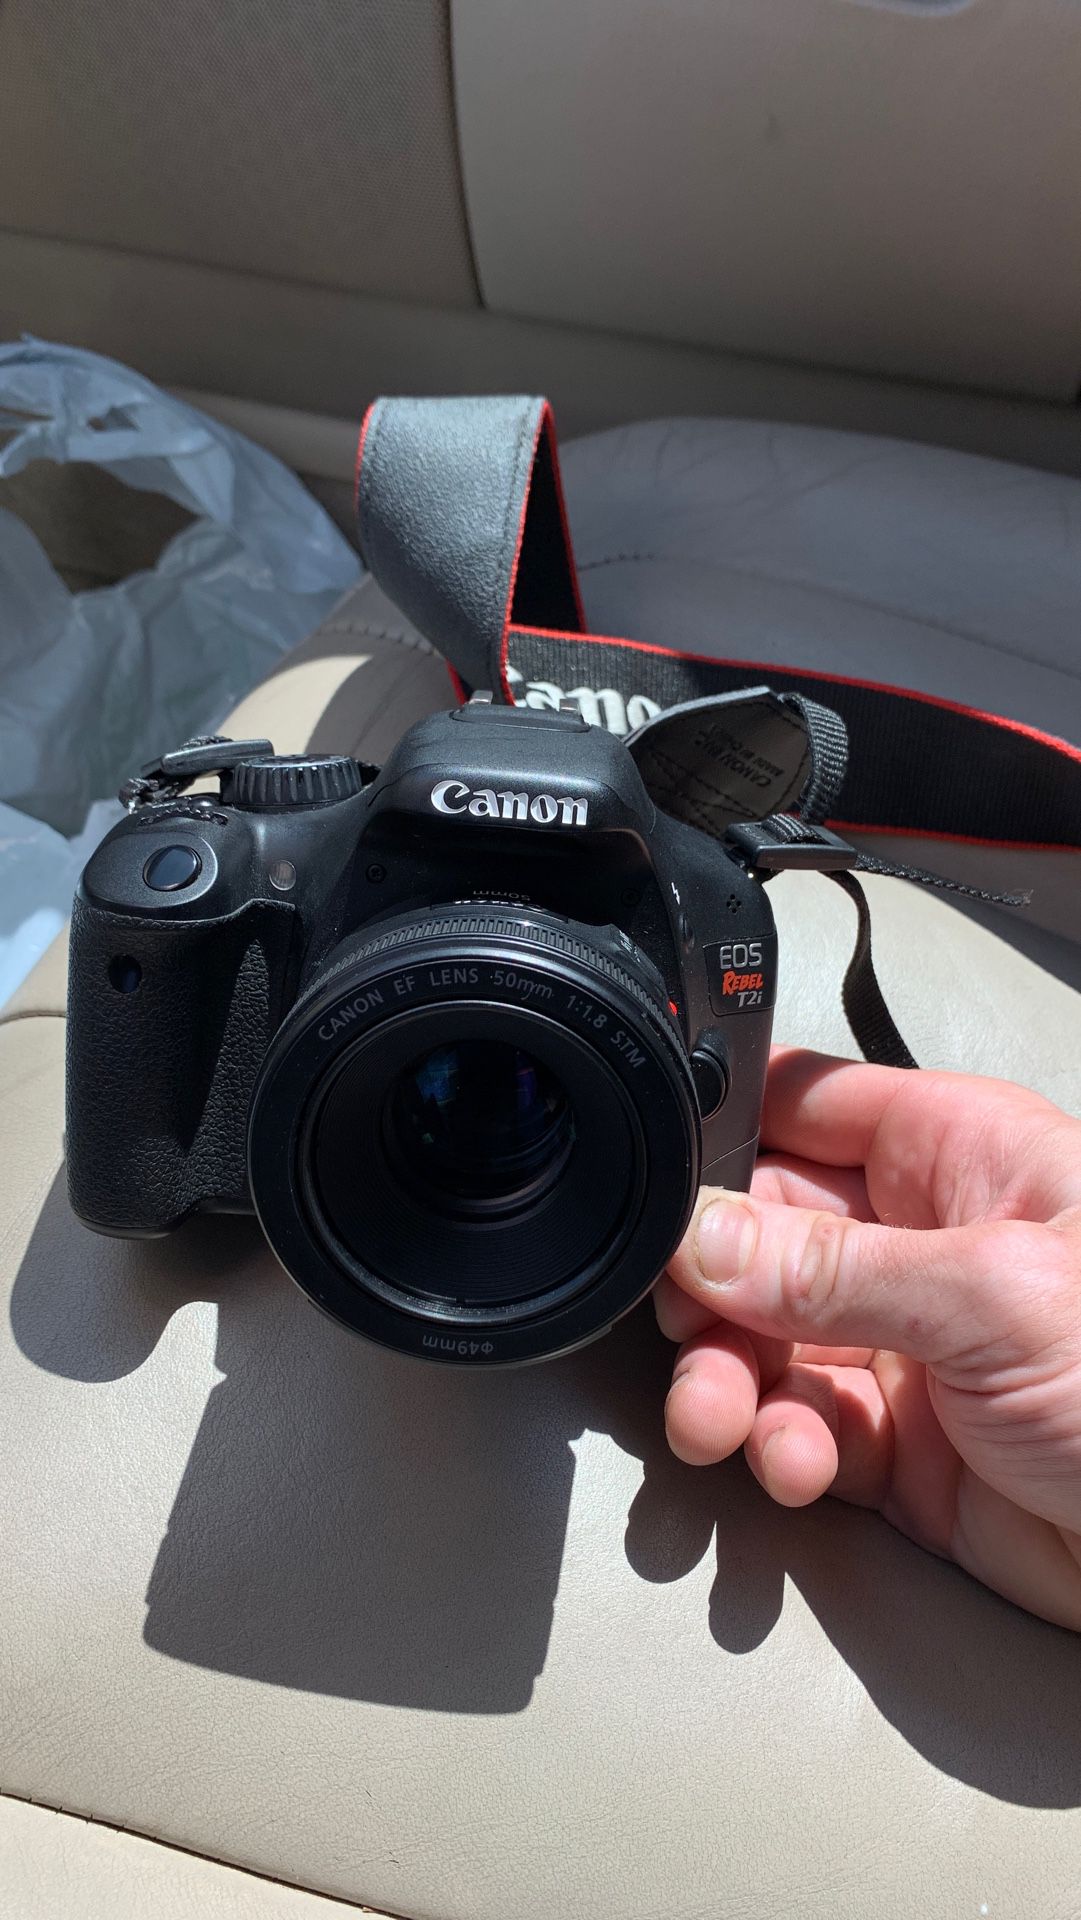 Canon EOS rebel t2i camera